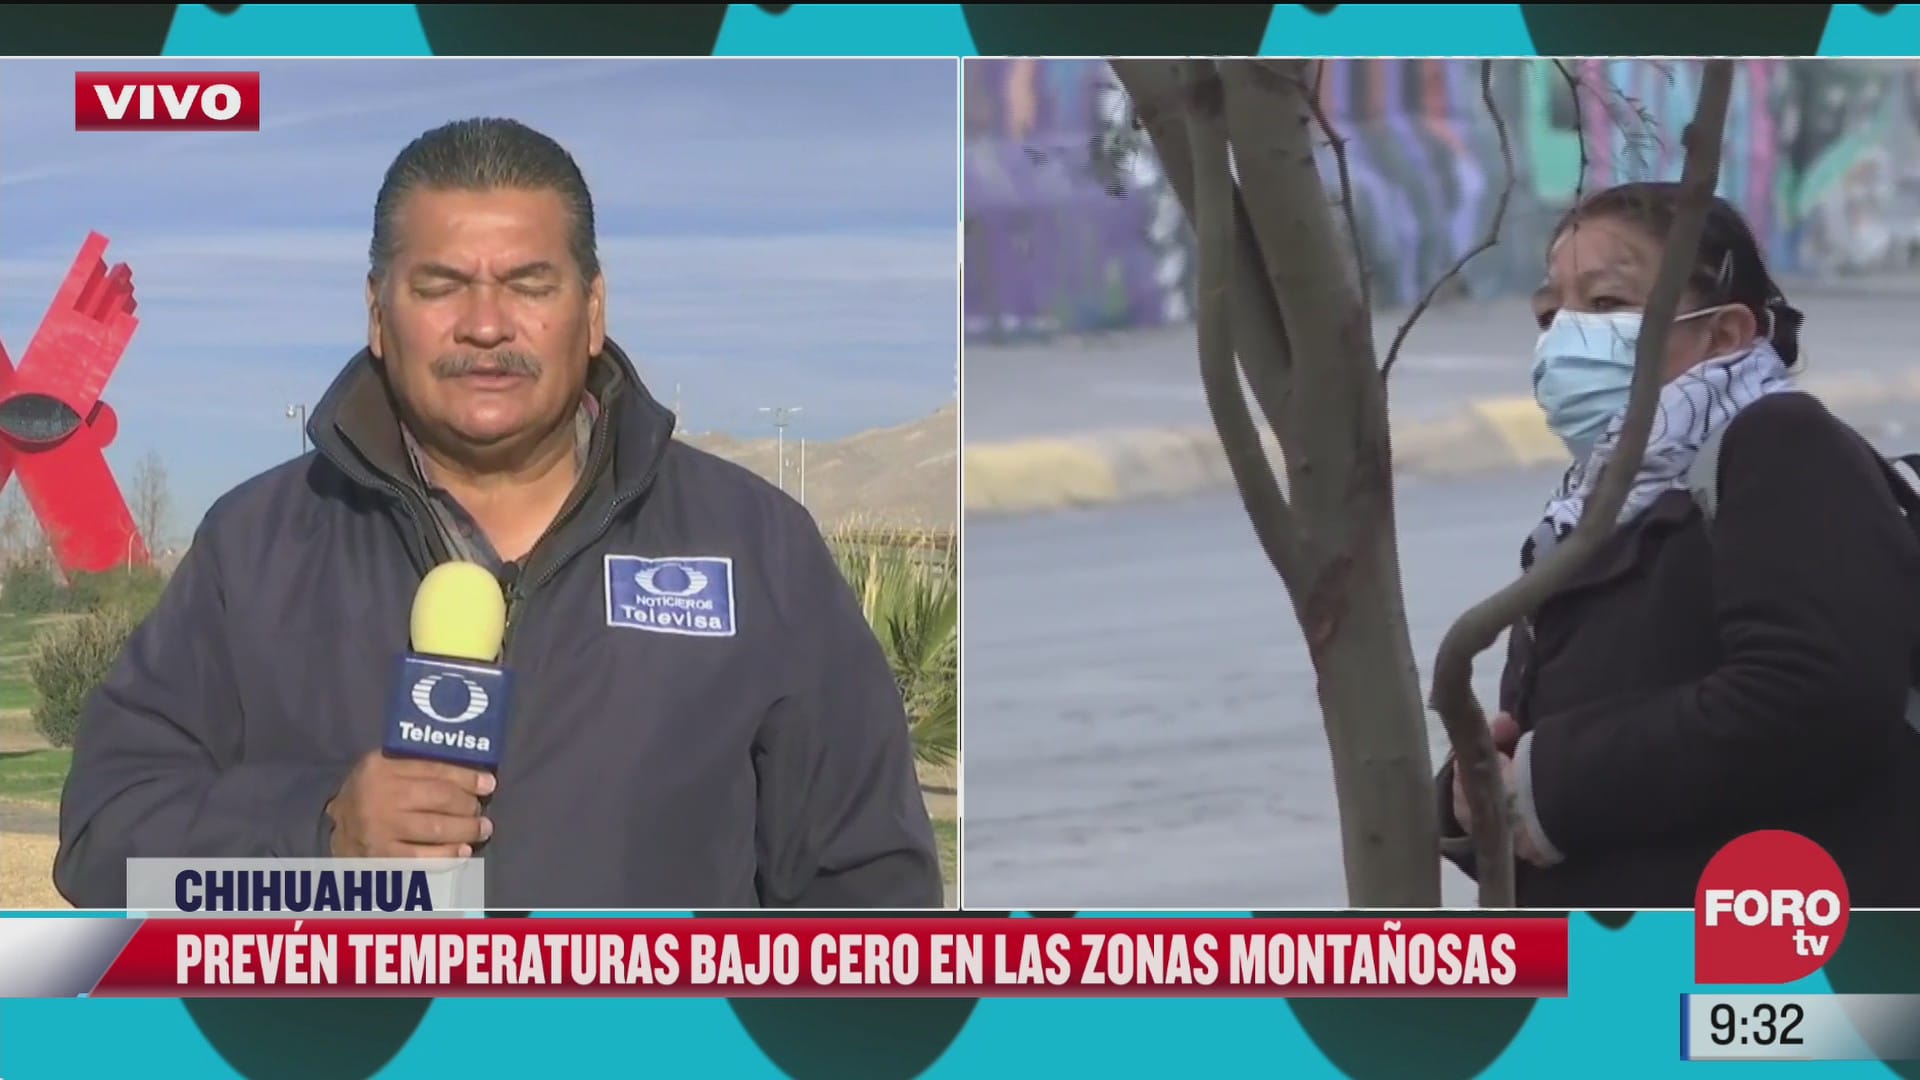 chihuahua instala refugios por las temperaturas congelantes que tendra